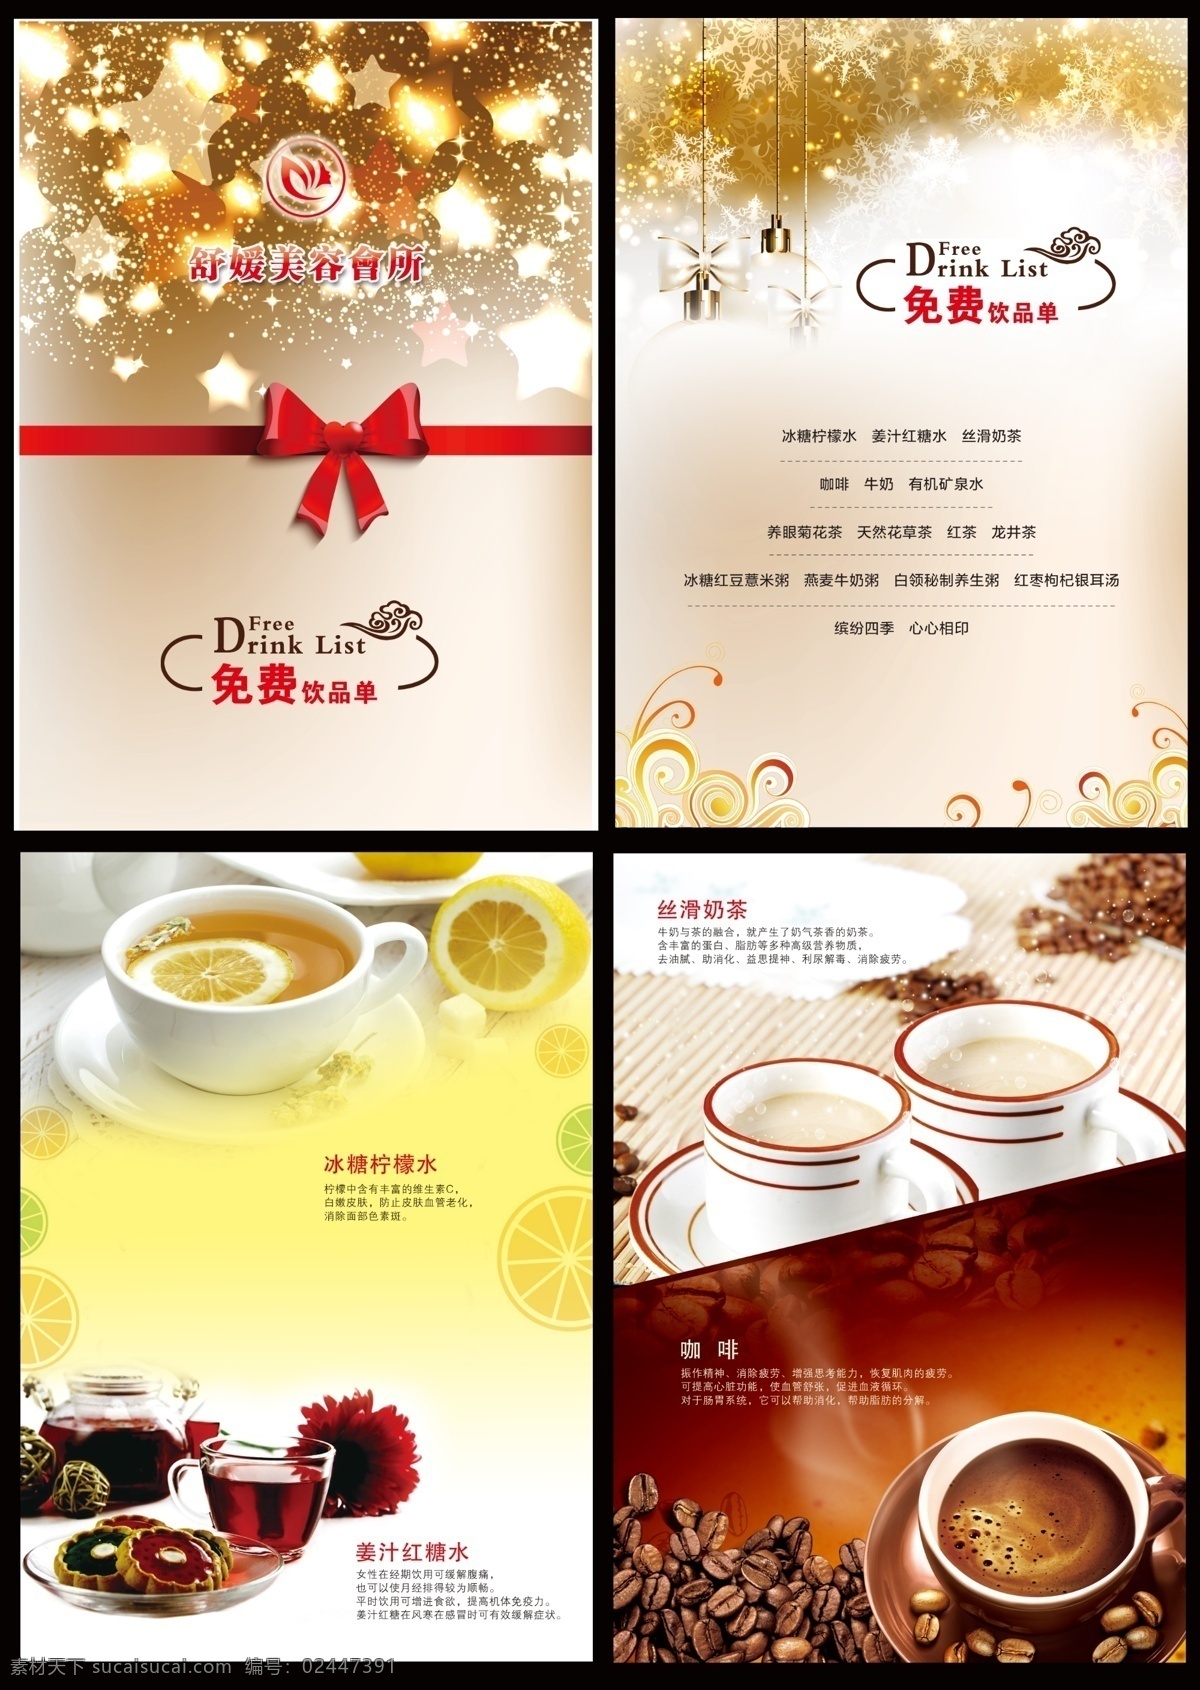 饮品 时尚饮品单 有机水 饮品海报 红茶 花茶 牛奶 广告设计模板 果茶 果汁 背景 dm宣传单